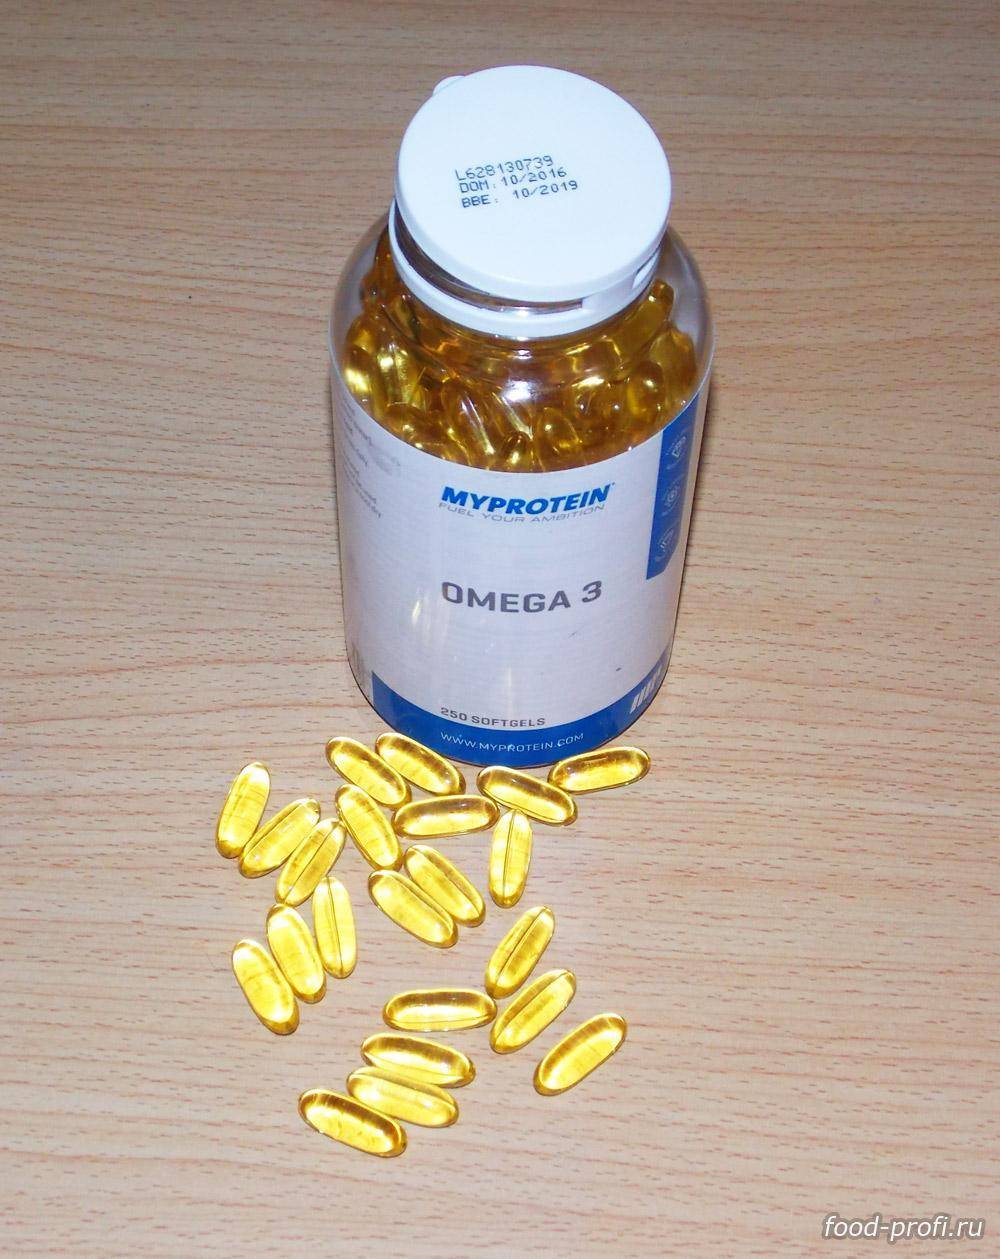 Myprotein omega 3 - 1000 mg 250 caps - качественная омега 3!